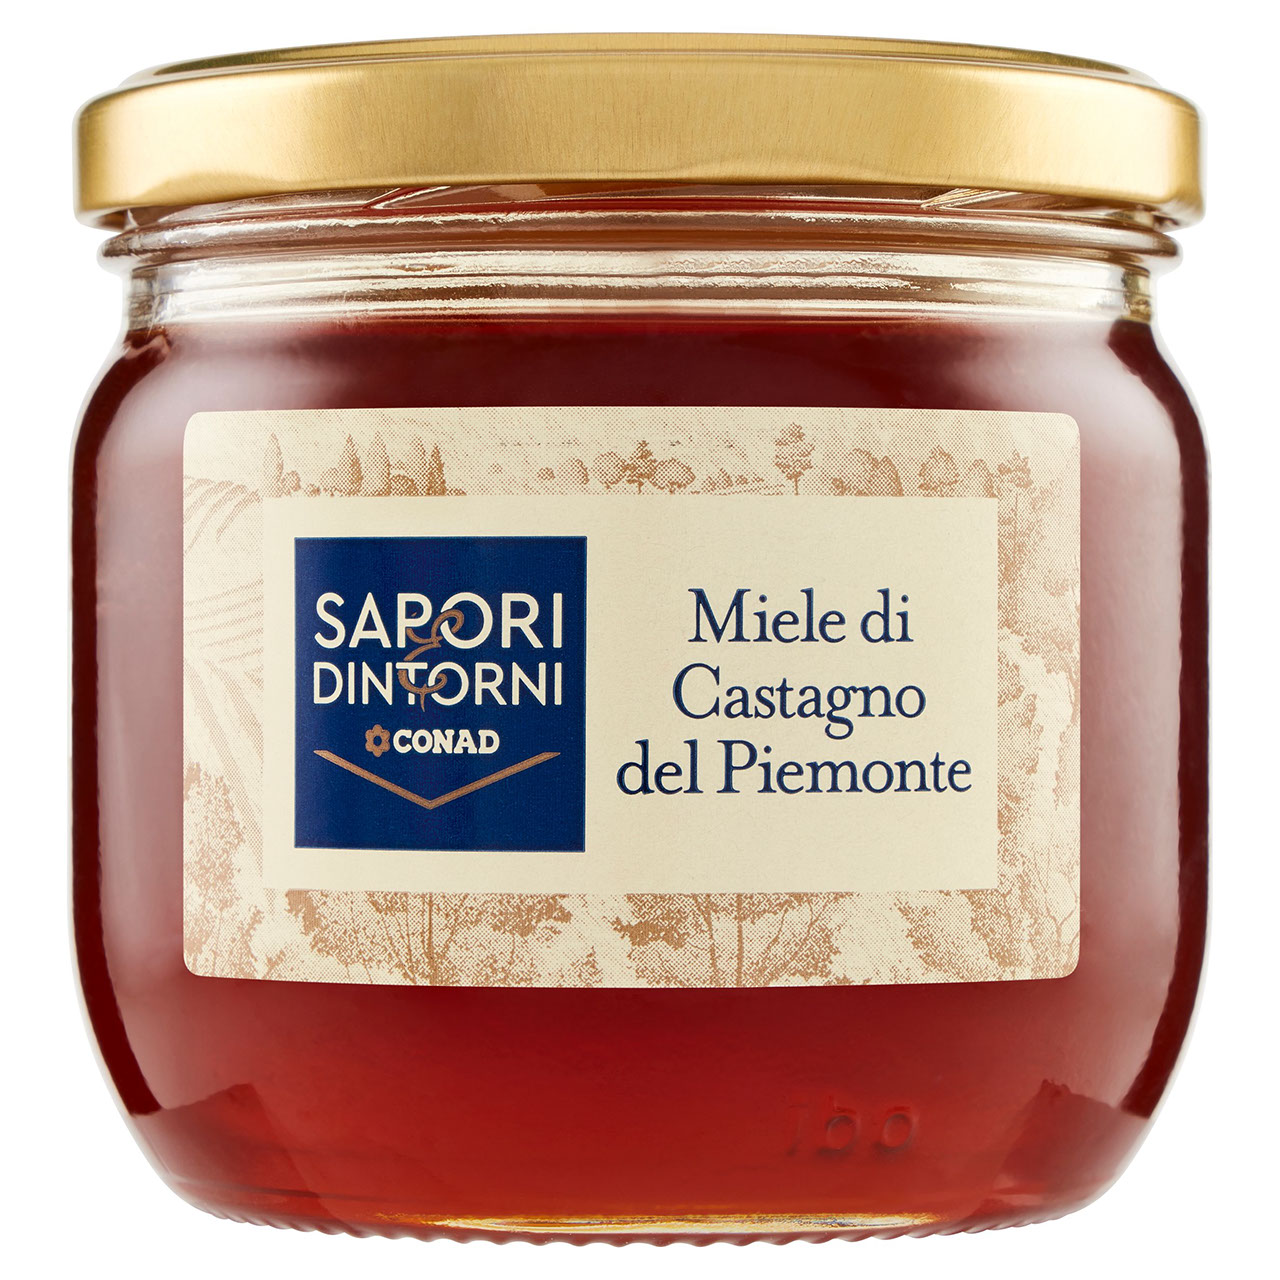 SAPORI & DINTORNI CONAD Miele di Castagno del Piemonte 400 g